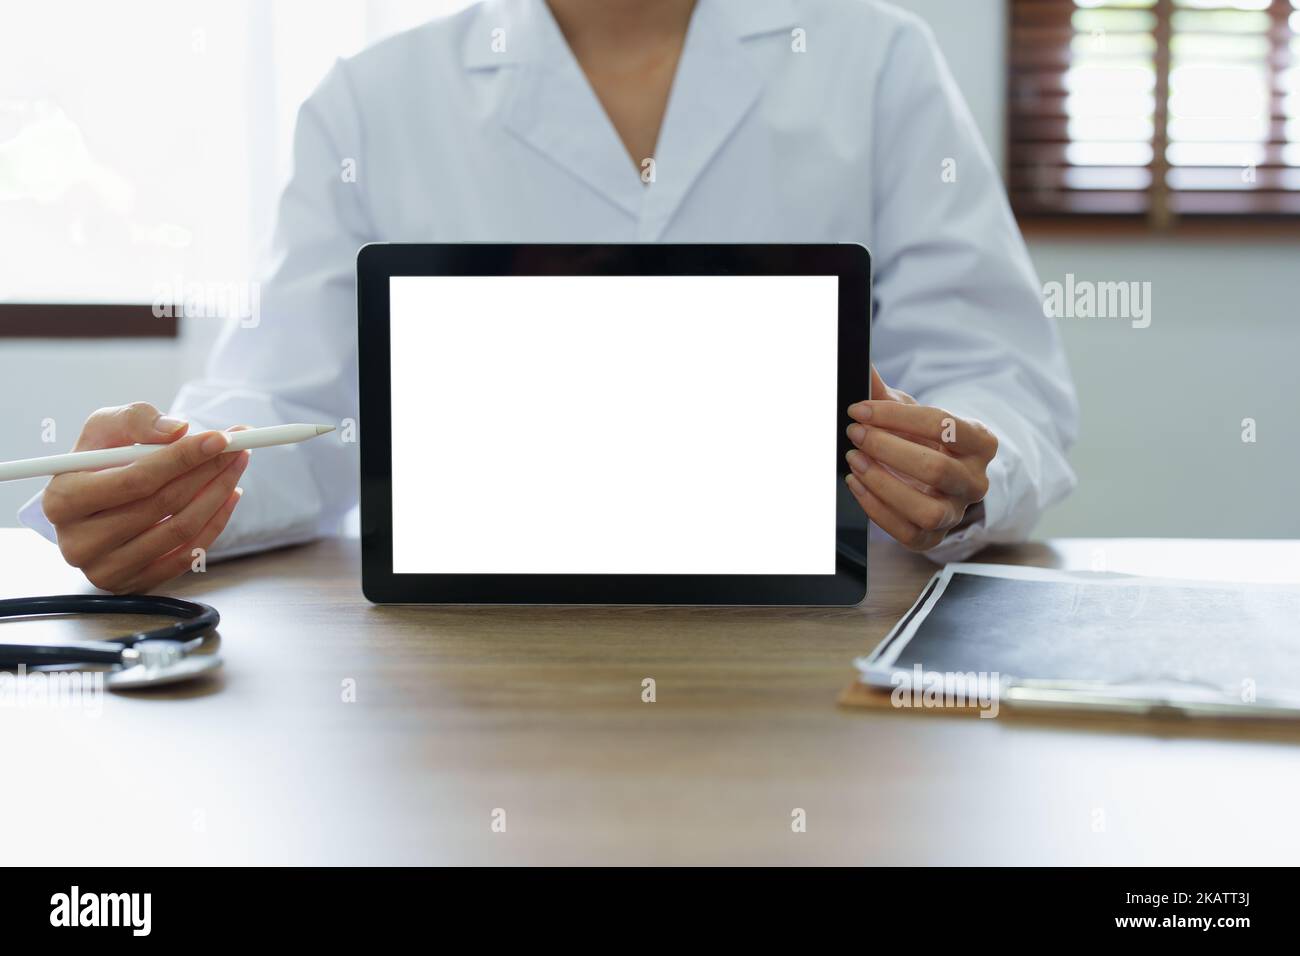 Le médecin asiatique tient la tablette d'ordinateur au client, l'écran blanc peut insérer du texte ou une image Banque D'Images